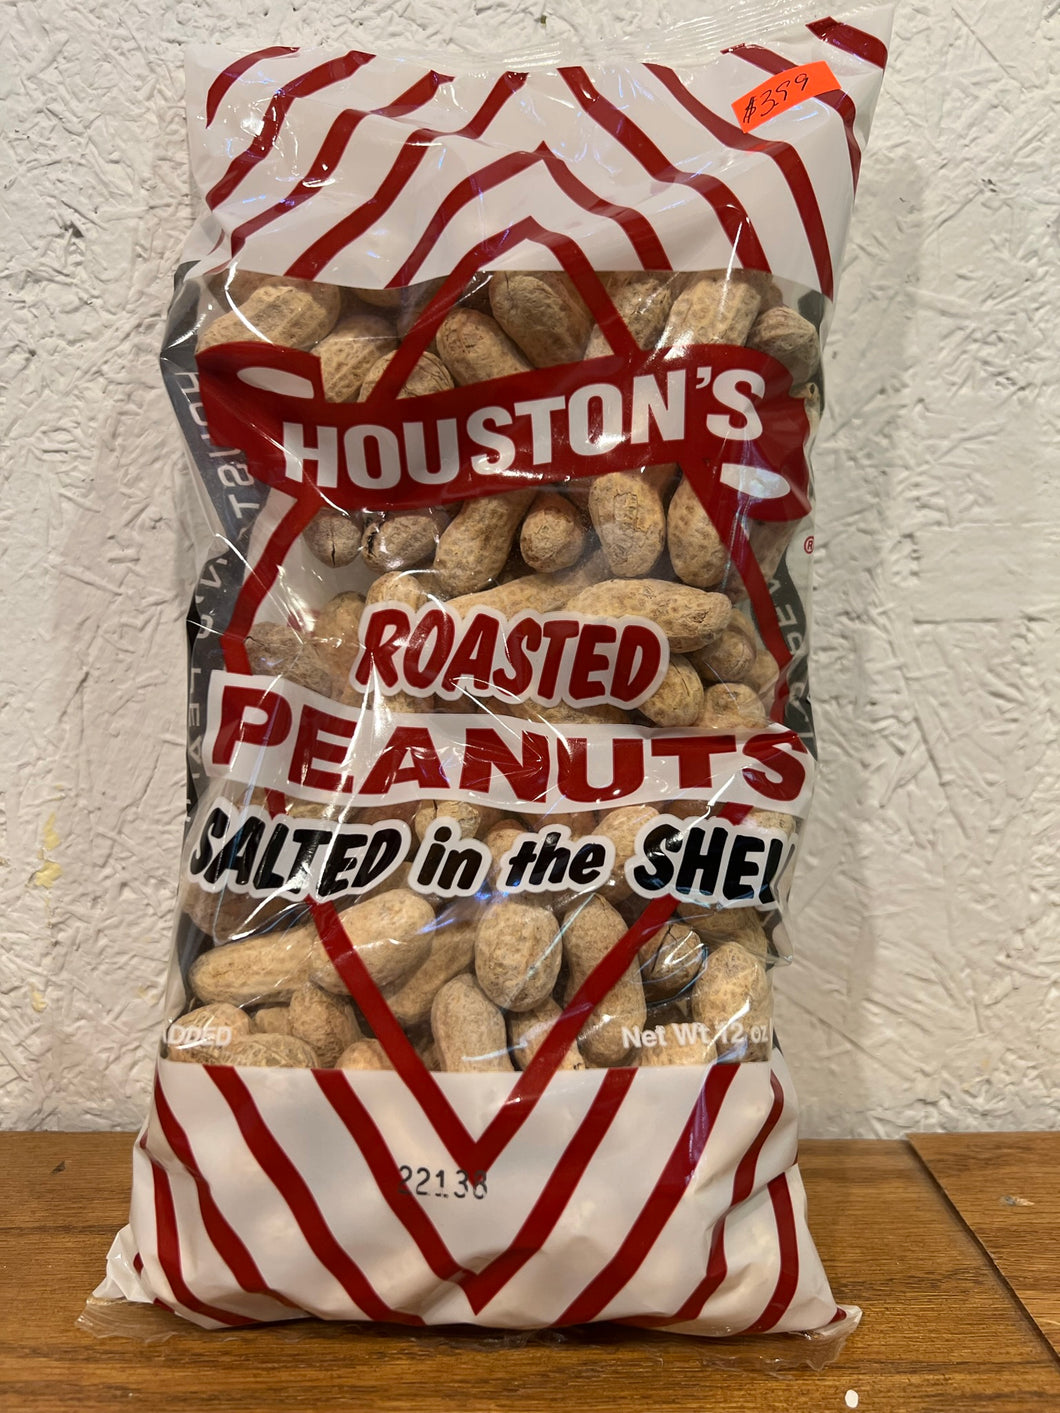 Houston's roasted peanuts